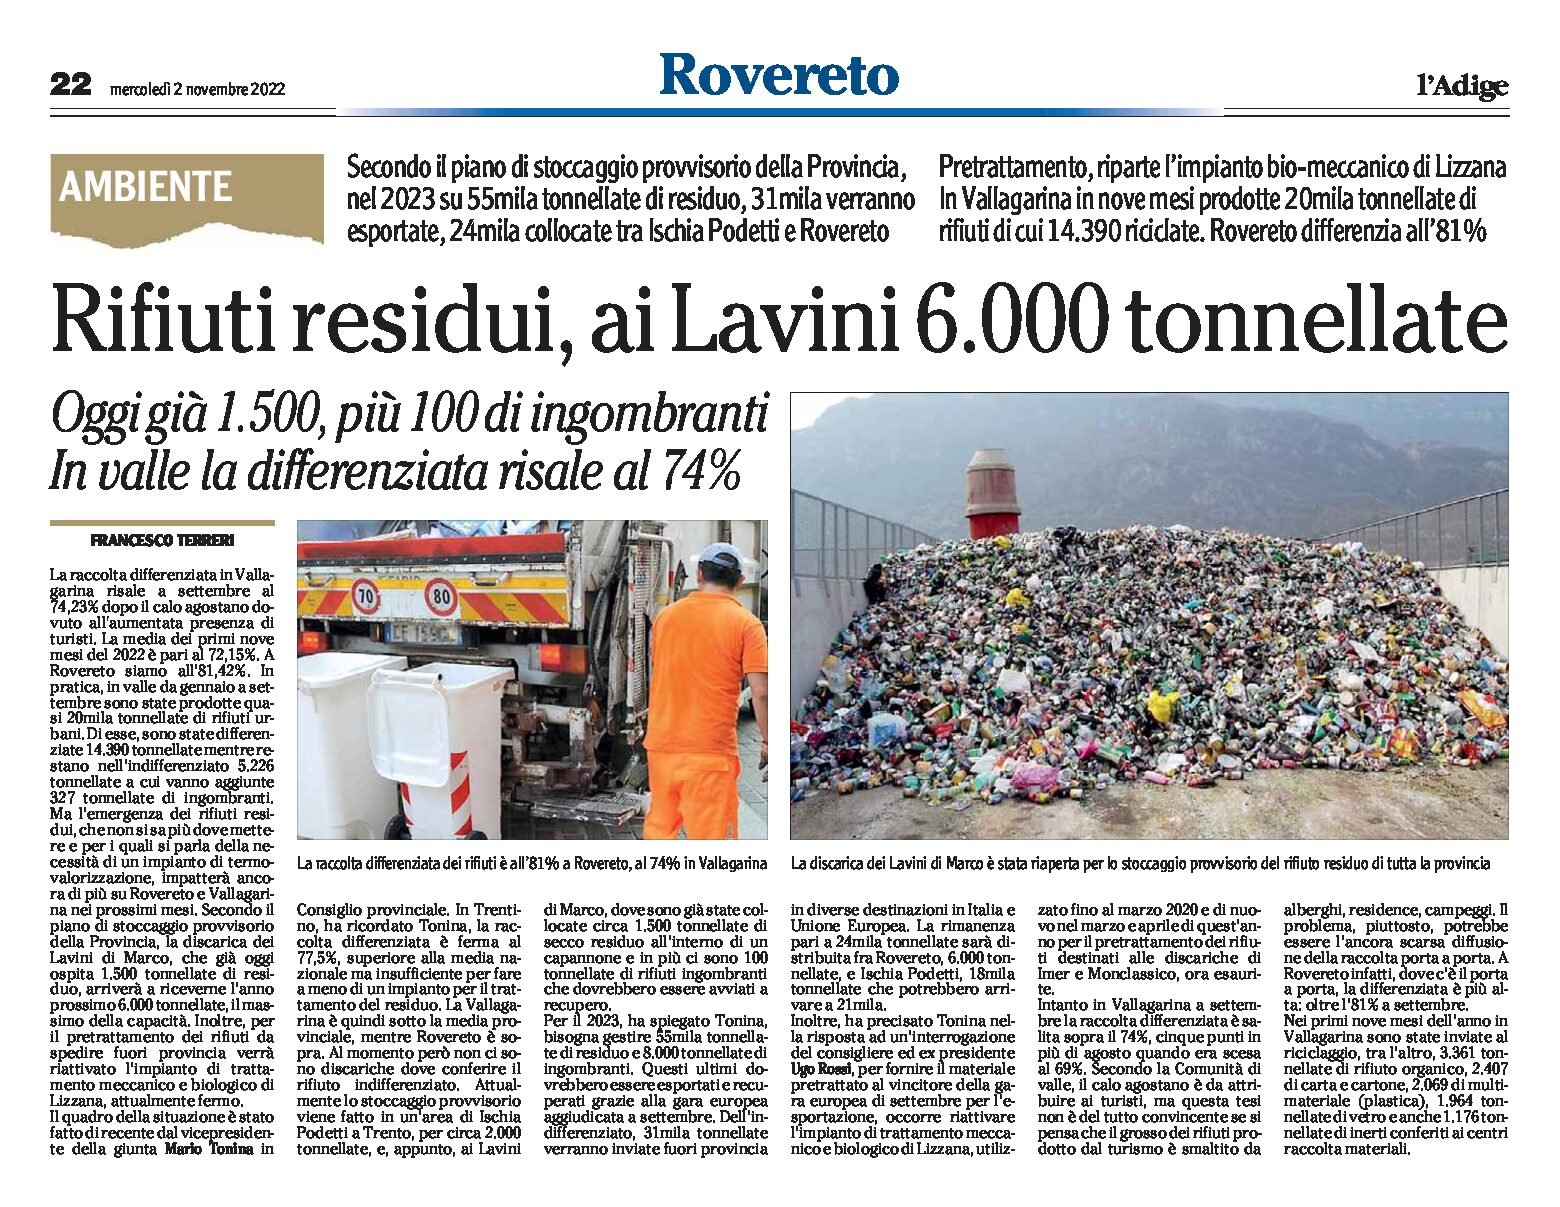 Rifiuti residui: ai Lavini 6.000 tonnellate